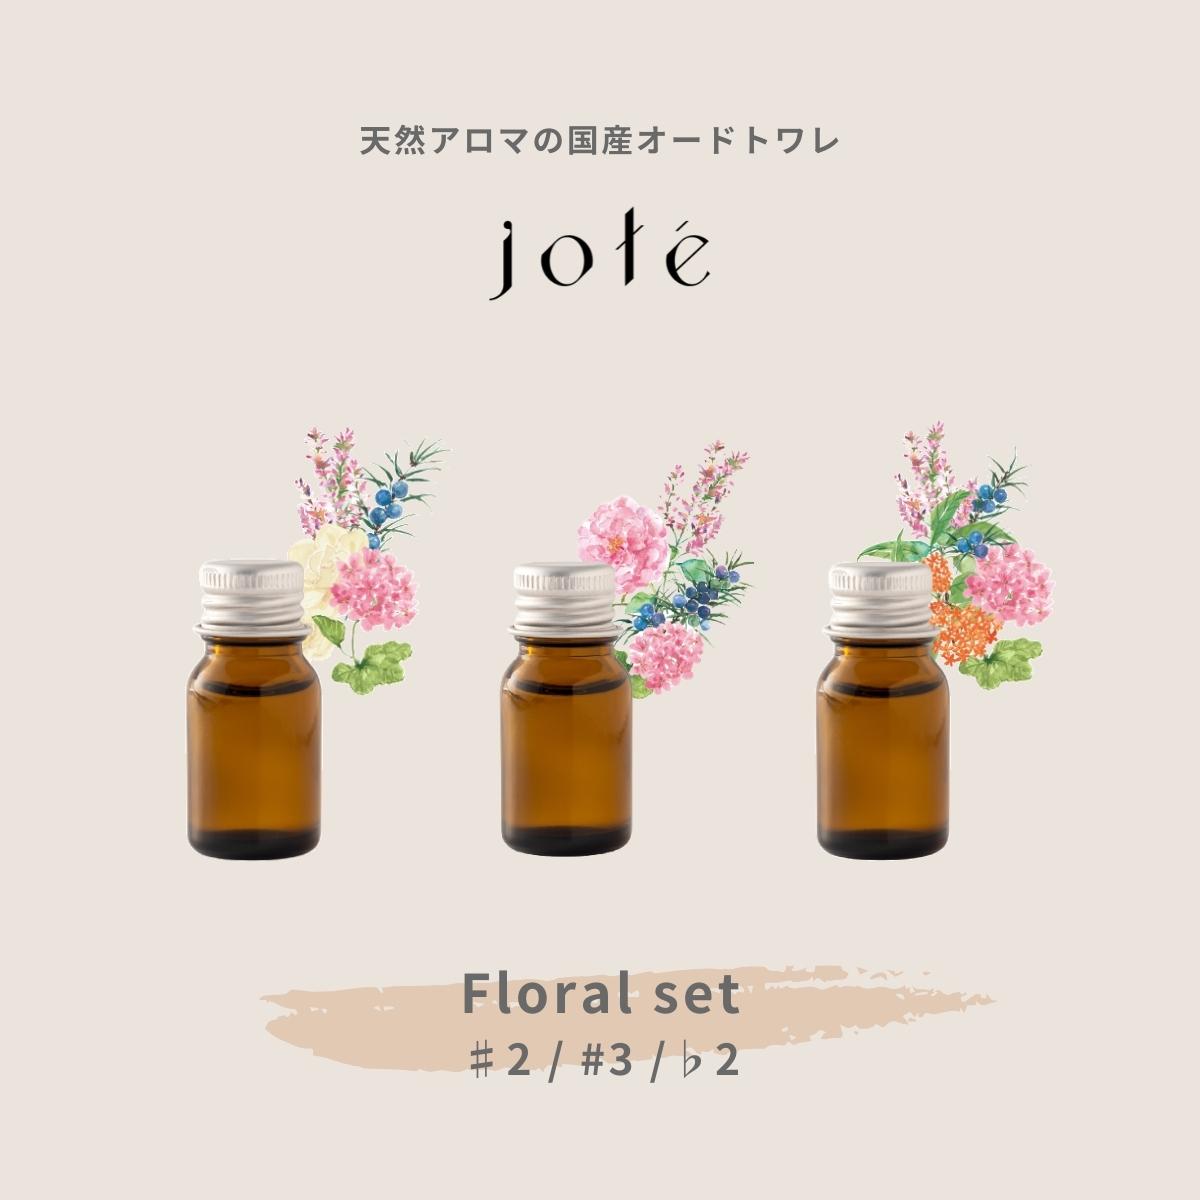 Floral set 】Perfume 気分によって使い分けるお試し5ml 3本セット